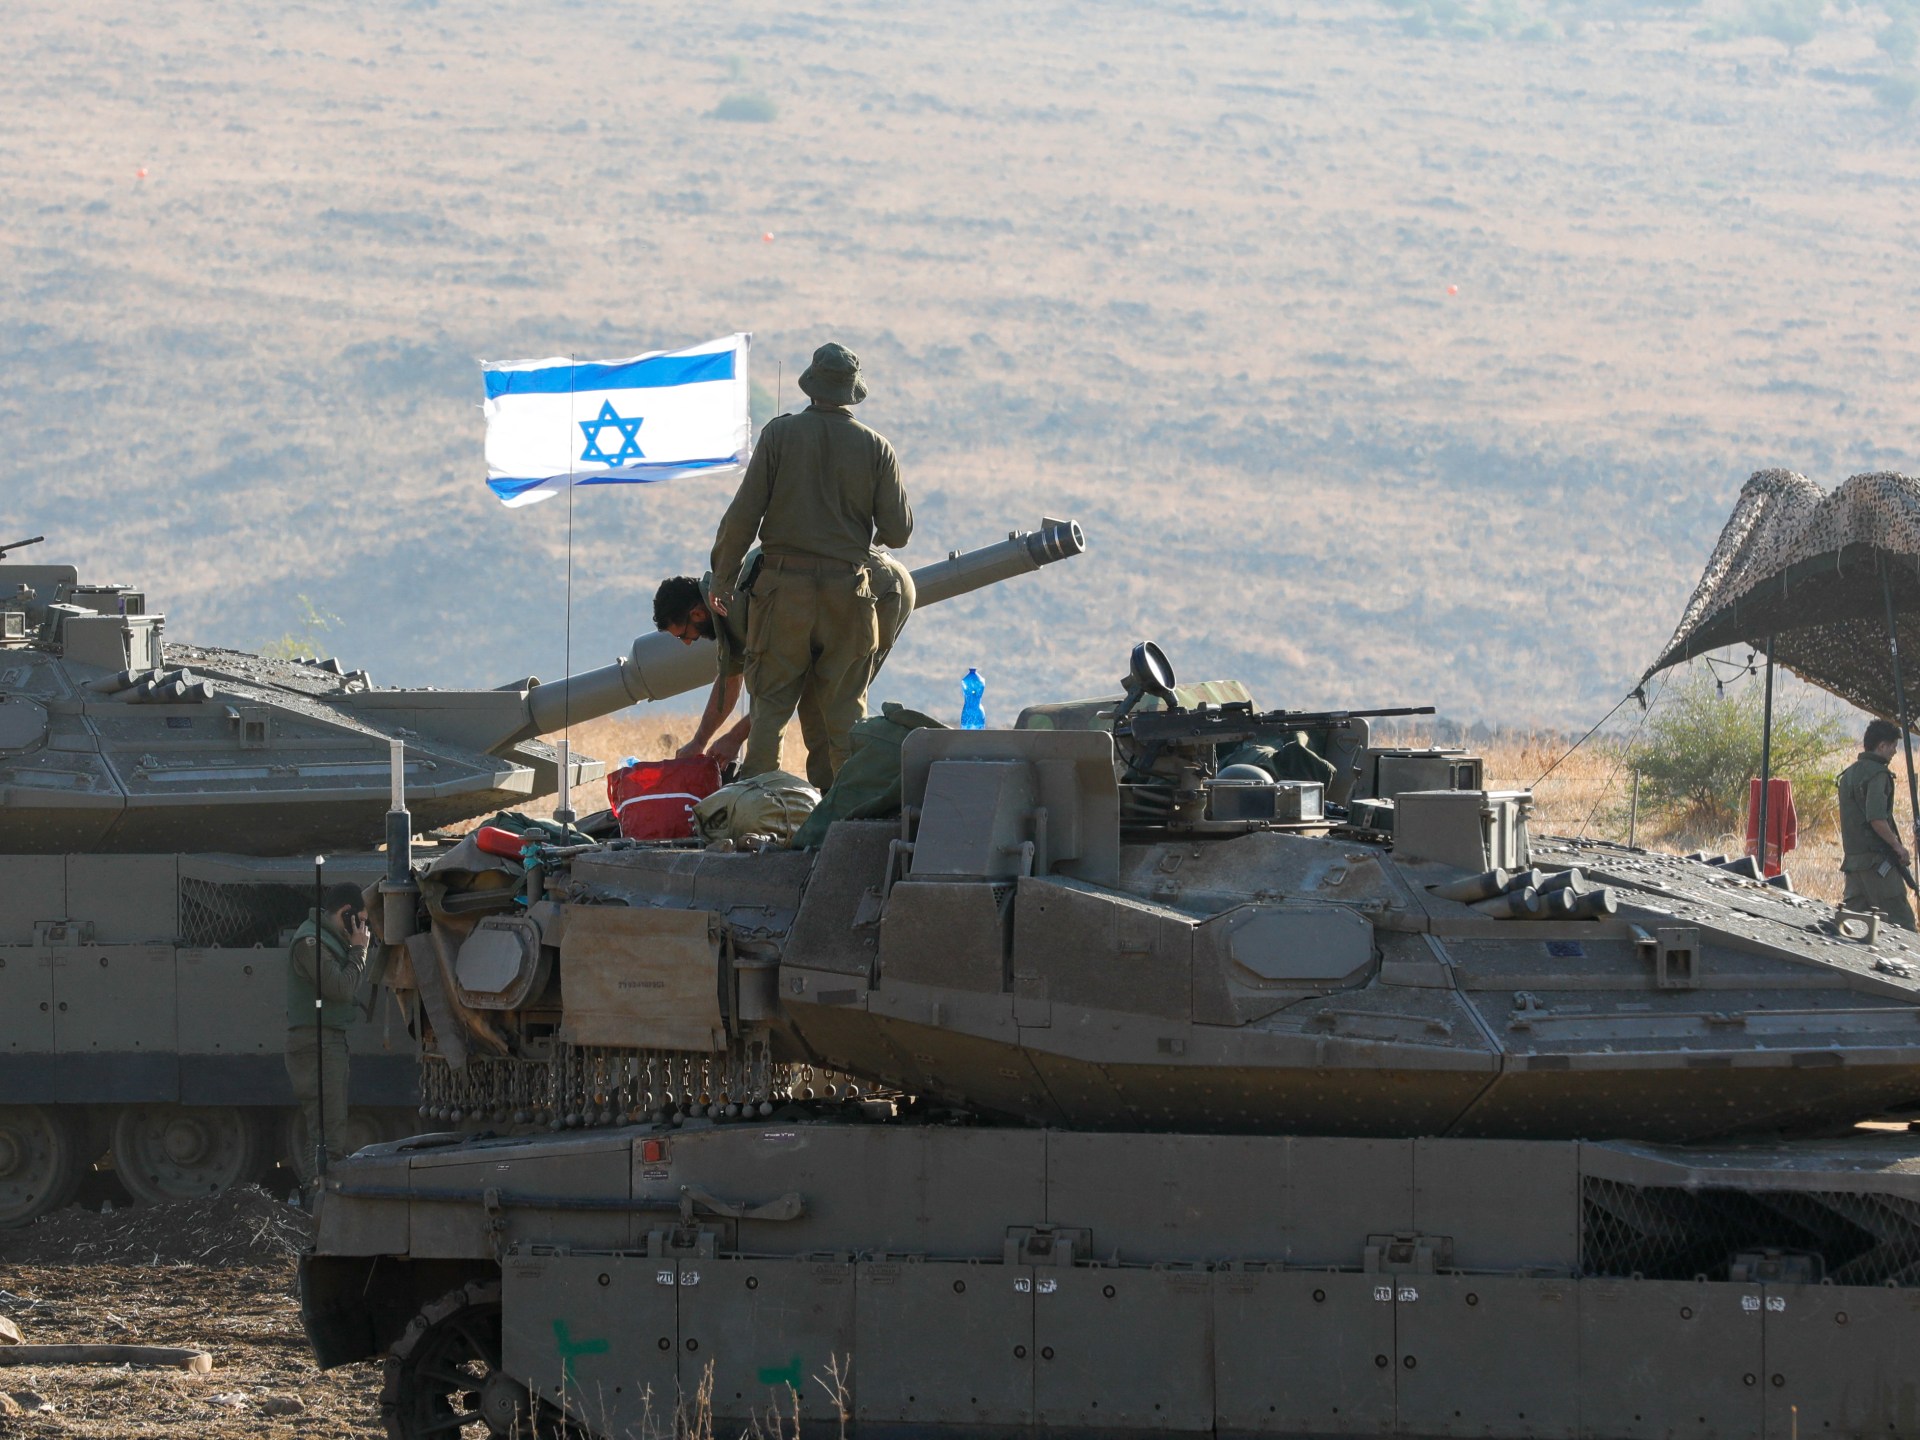 مقتل جندي إسرائيلي وإصابة آخرين في قصف لحزب الله | أخبار – البوكس نيوز